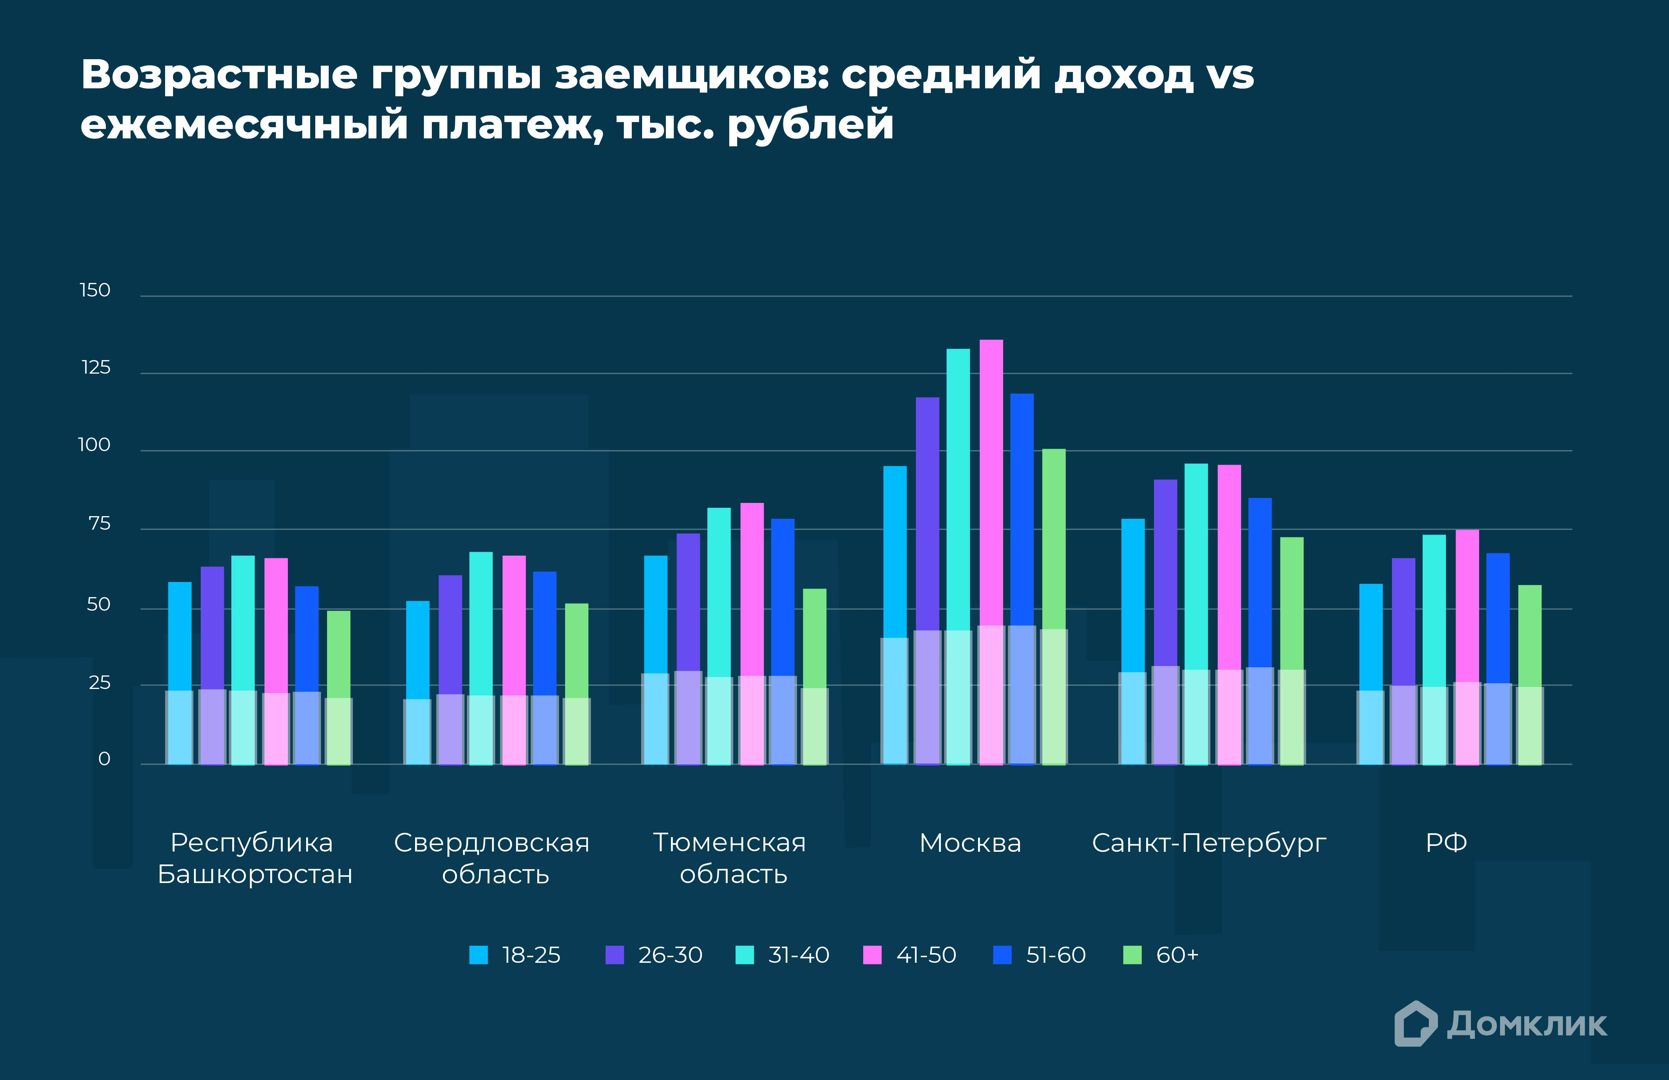 Соотношение медианного ежемесячного дохода молодежи (18-25 лет) и медианного ежемесячного платежа по ипотеке в 2023 году. Представлены данные для топ-3 регионов по количеству выдач молодым людям, а также для Москвы, Санкт-Петербурга и РФ. Параметры указаны в тыс. руб.